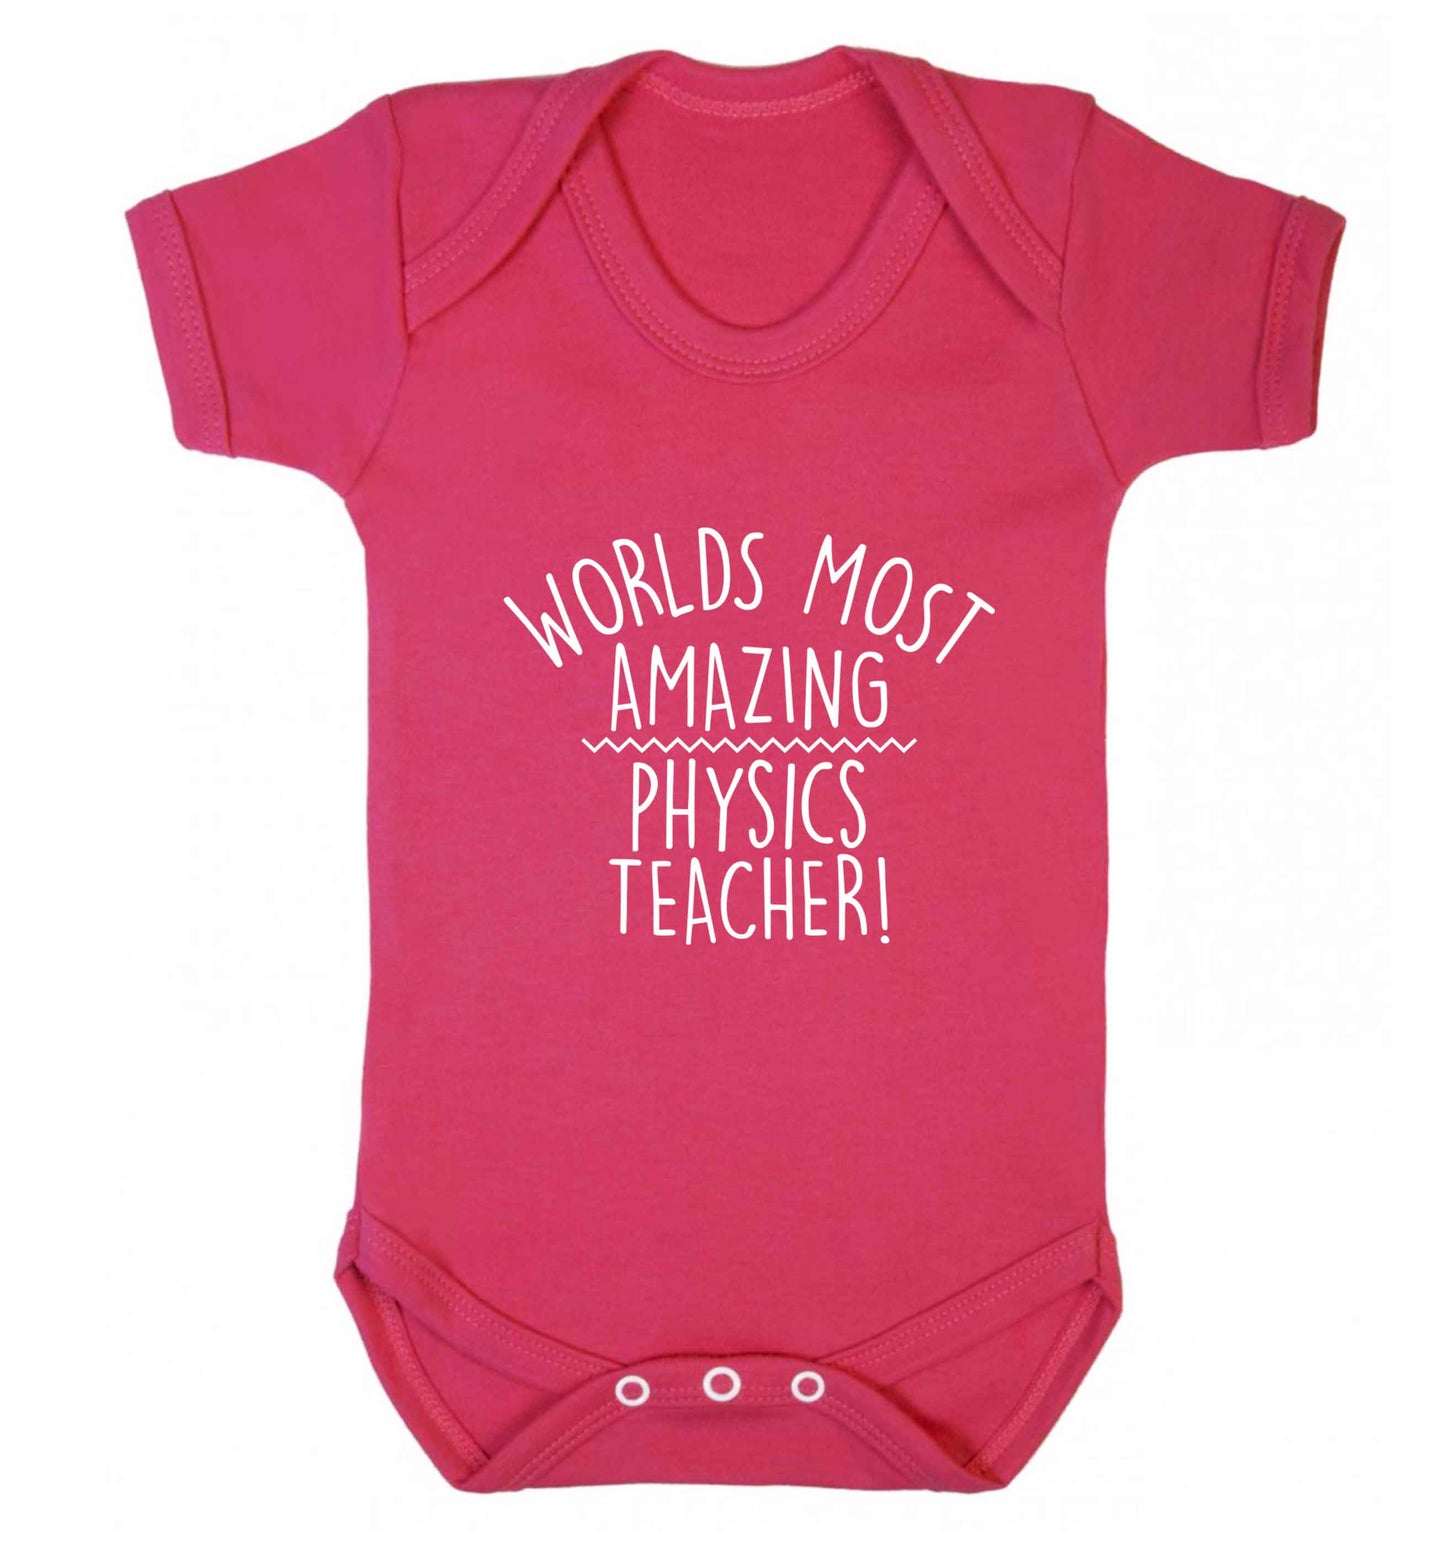 Worlds most amazing physics teacher baby vest dark pink 18-24 months